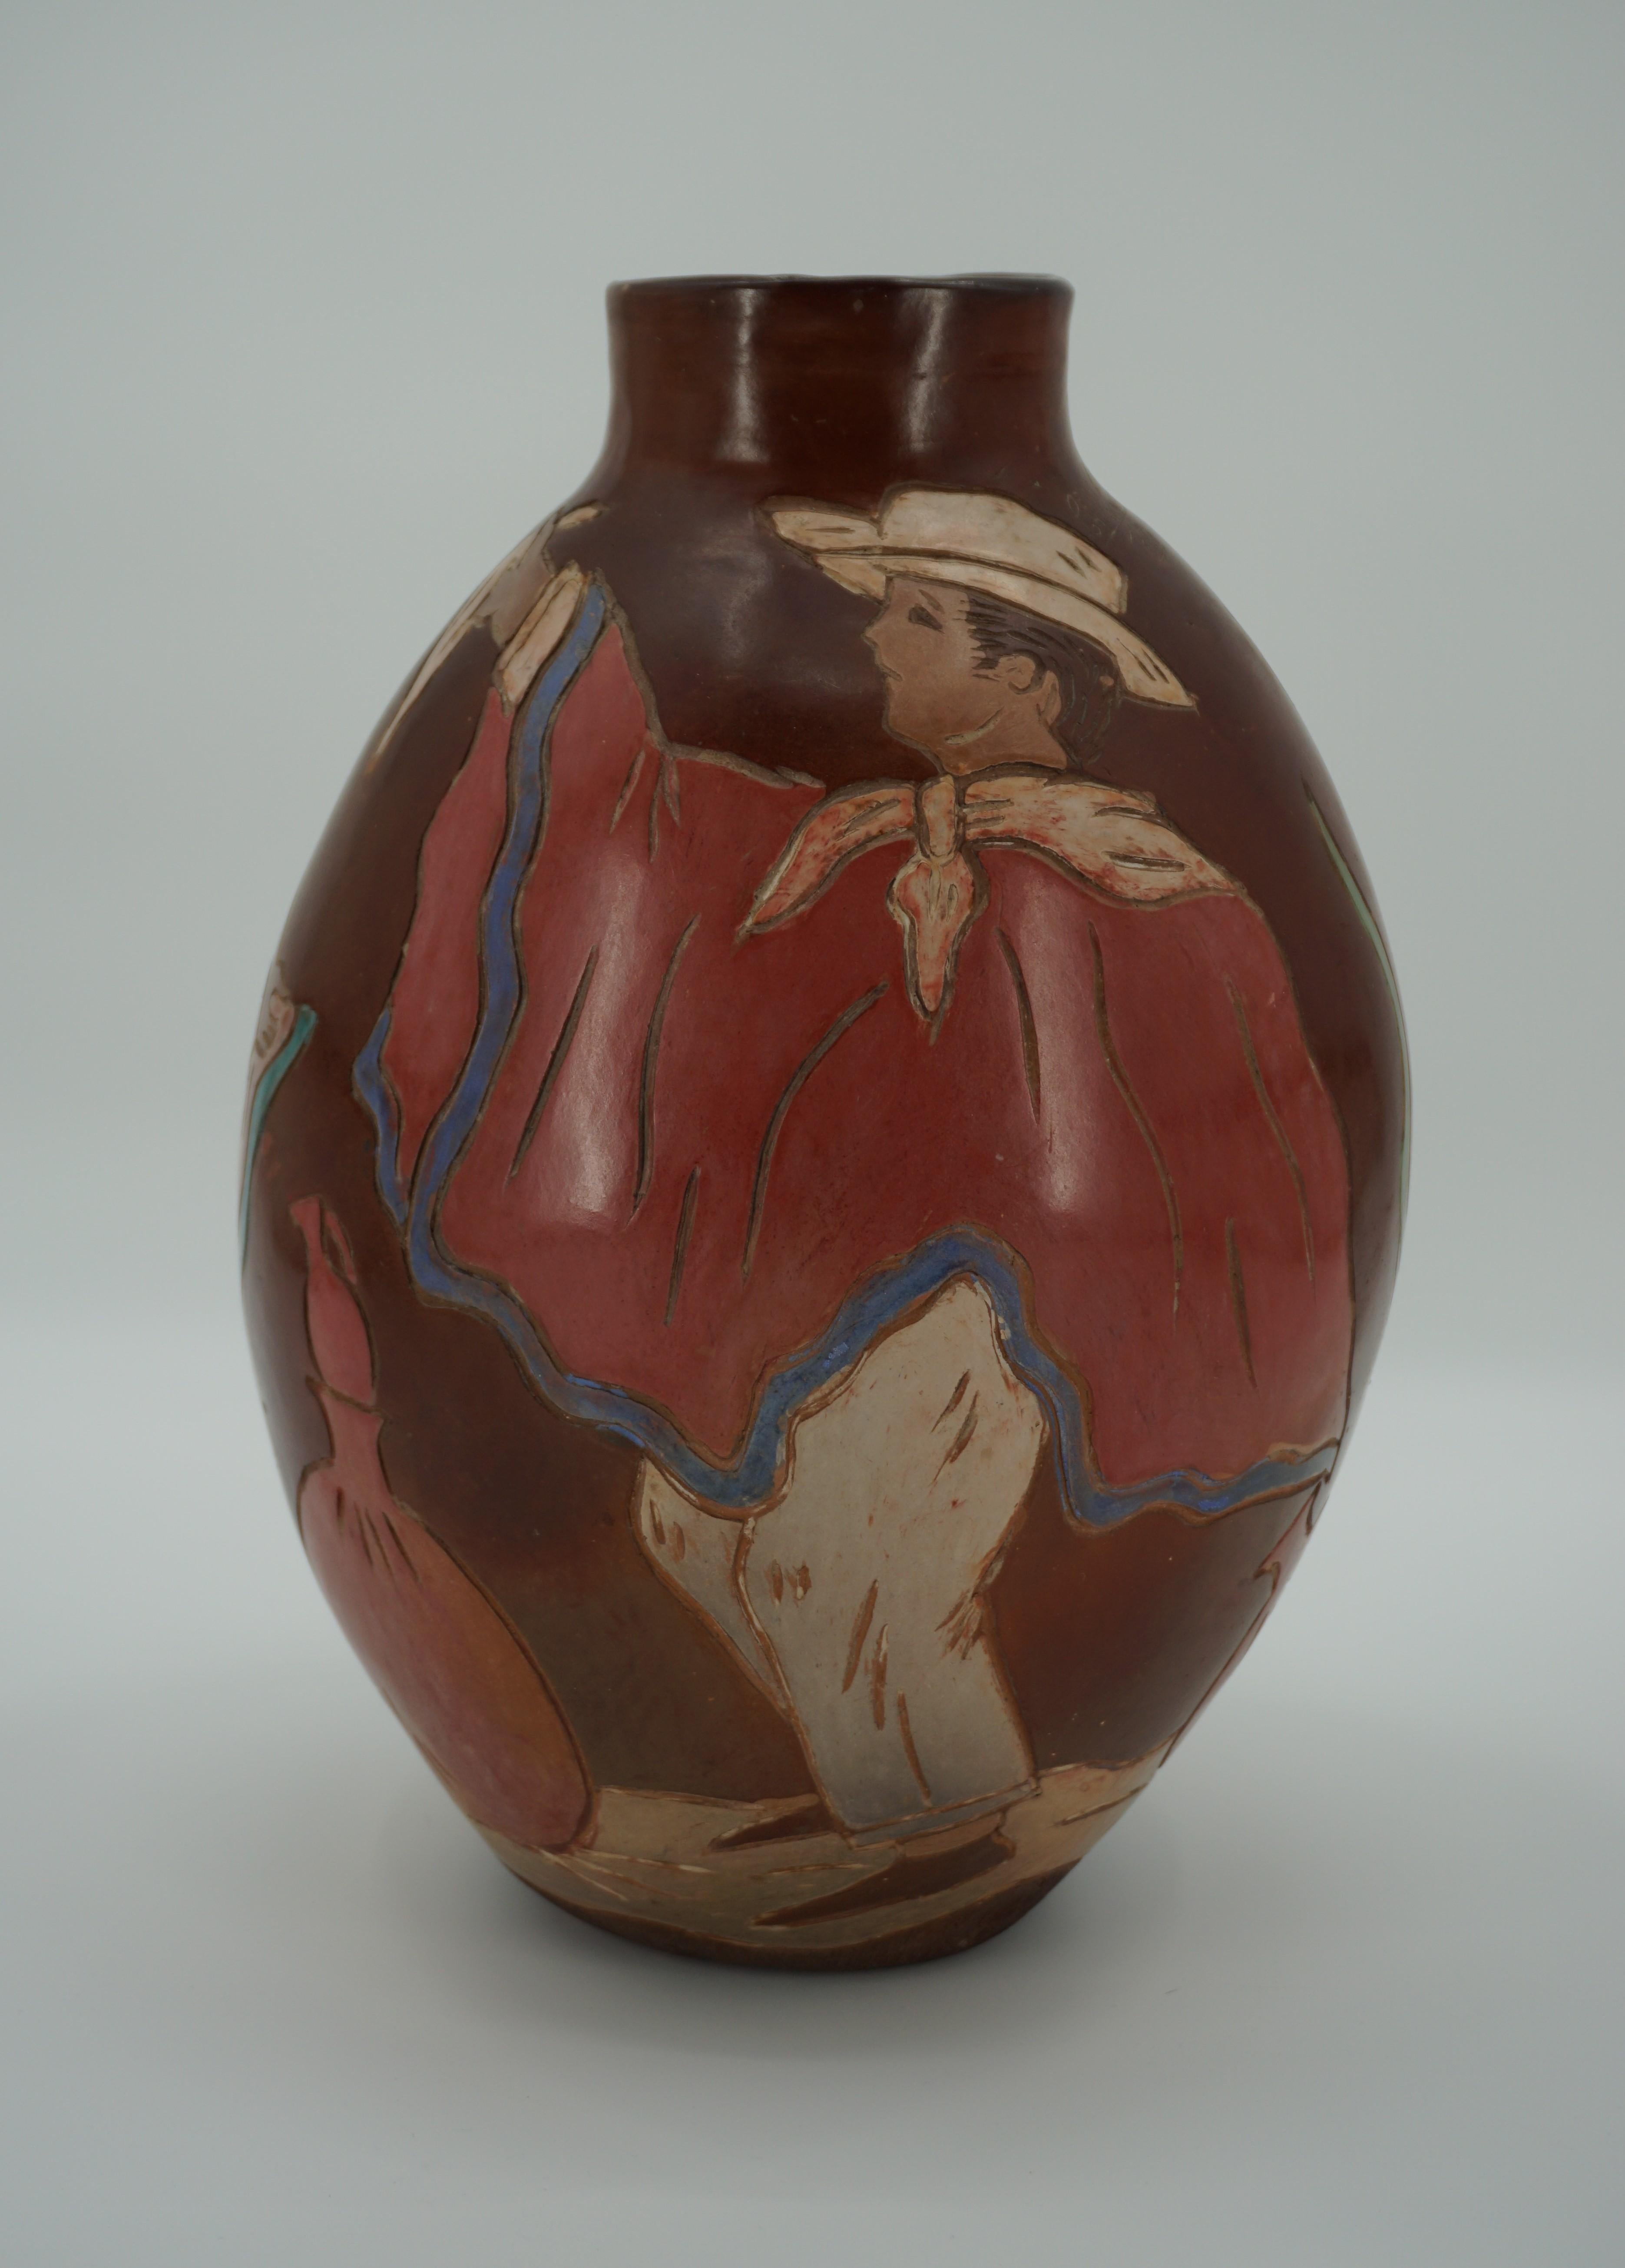 Dekorative Vase von Cesar Alache, in Chulucanas, Peru. Dekoration von Tänzern eines Mannes und einer Frau um eine schöne Keramikvase.